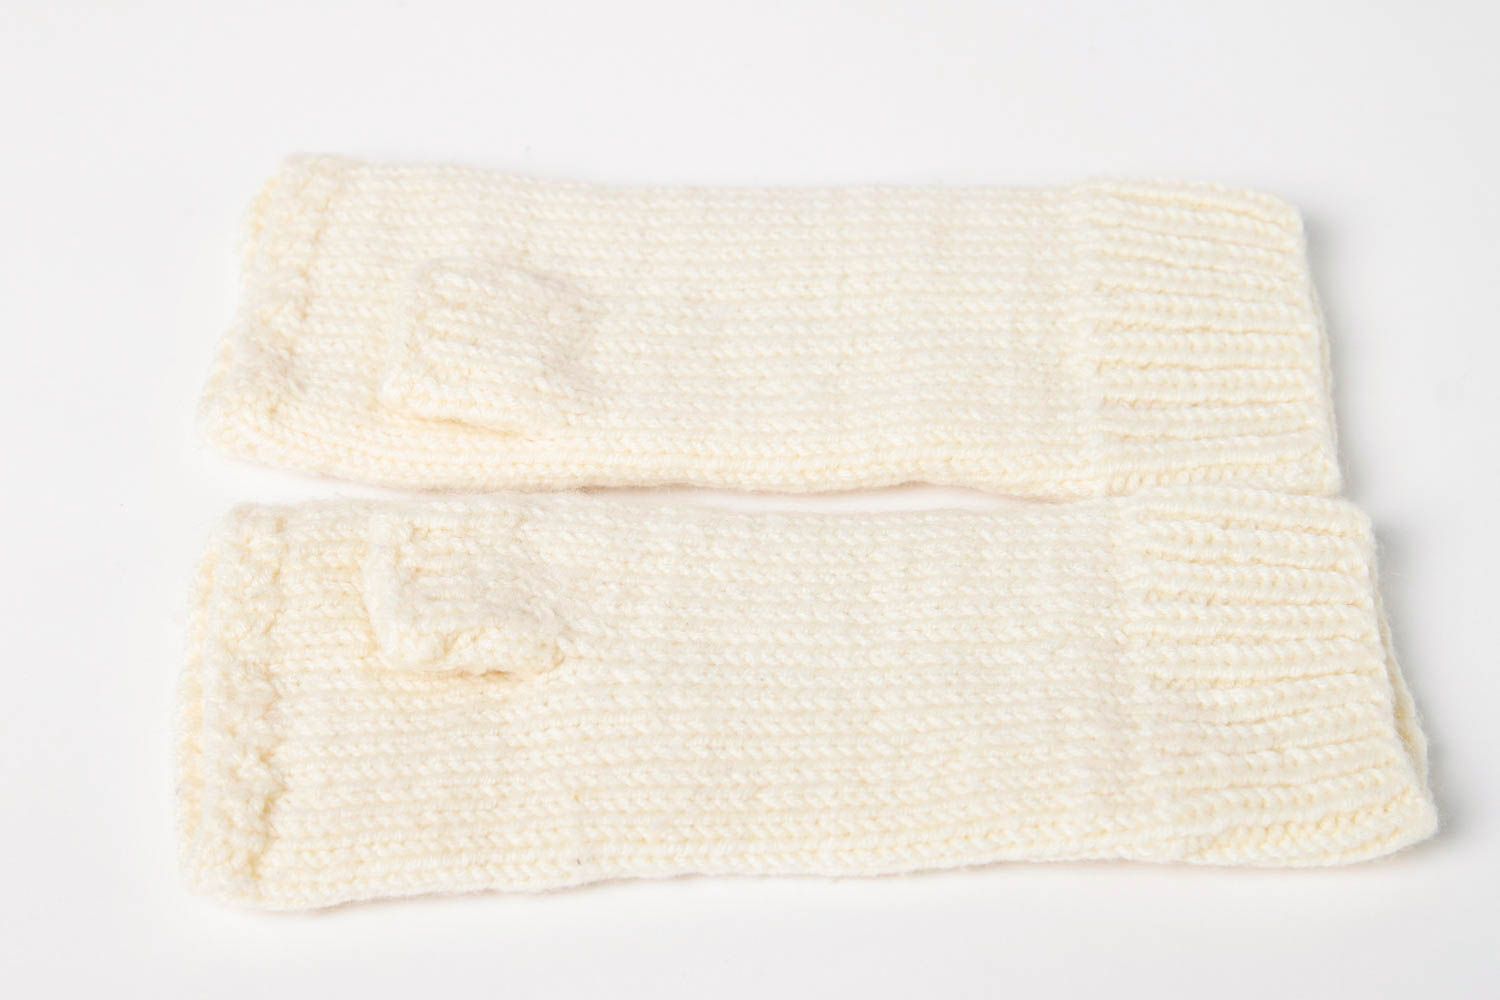 Handmade knitted mittens winter mittens winter accessories warm mittens photo 9